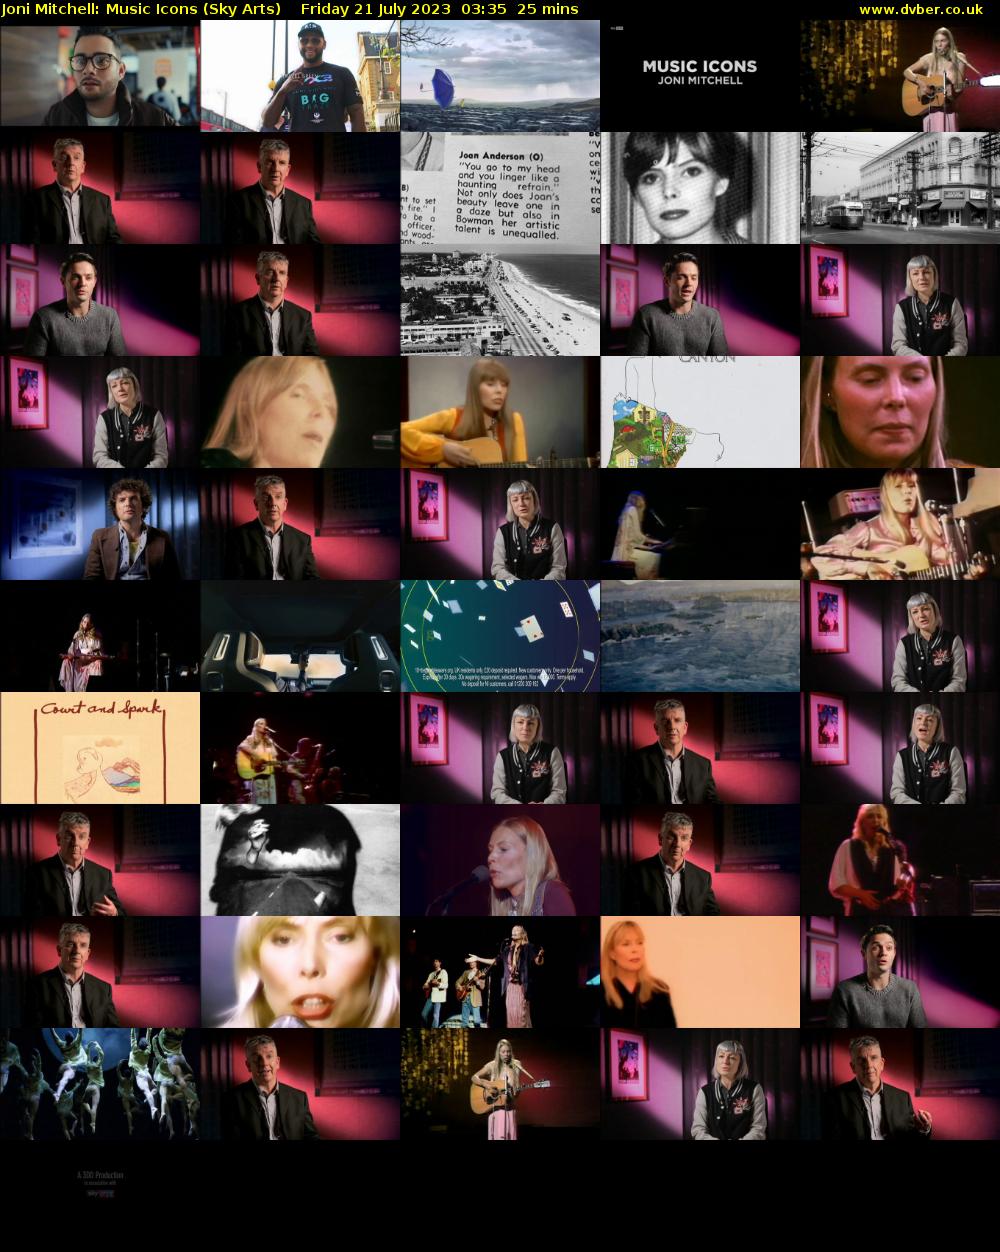 Joni Mitchell: Music Icons (Sky Arts) Friday 21 July 2023 03:35 - 04:00